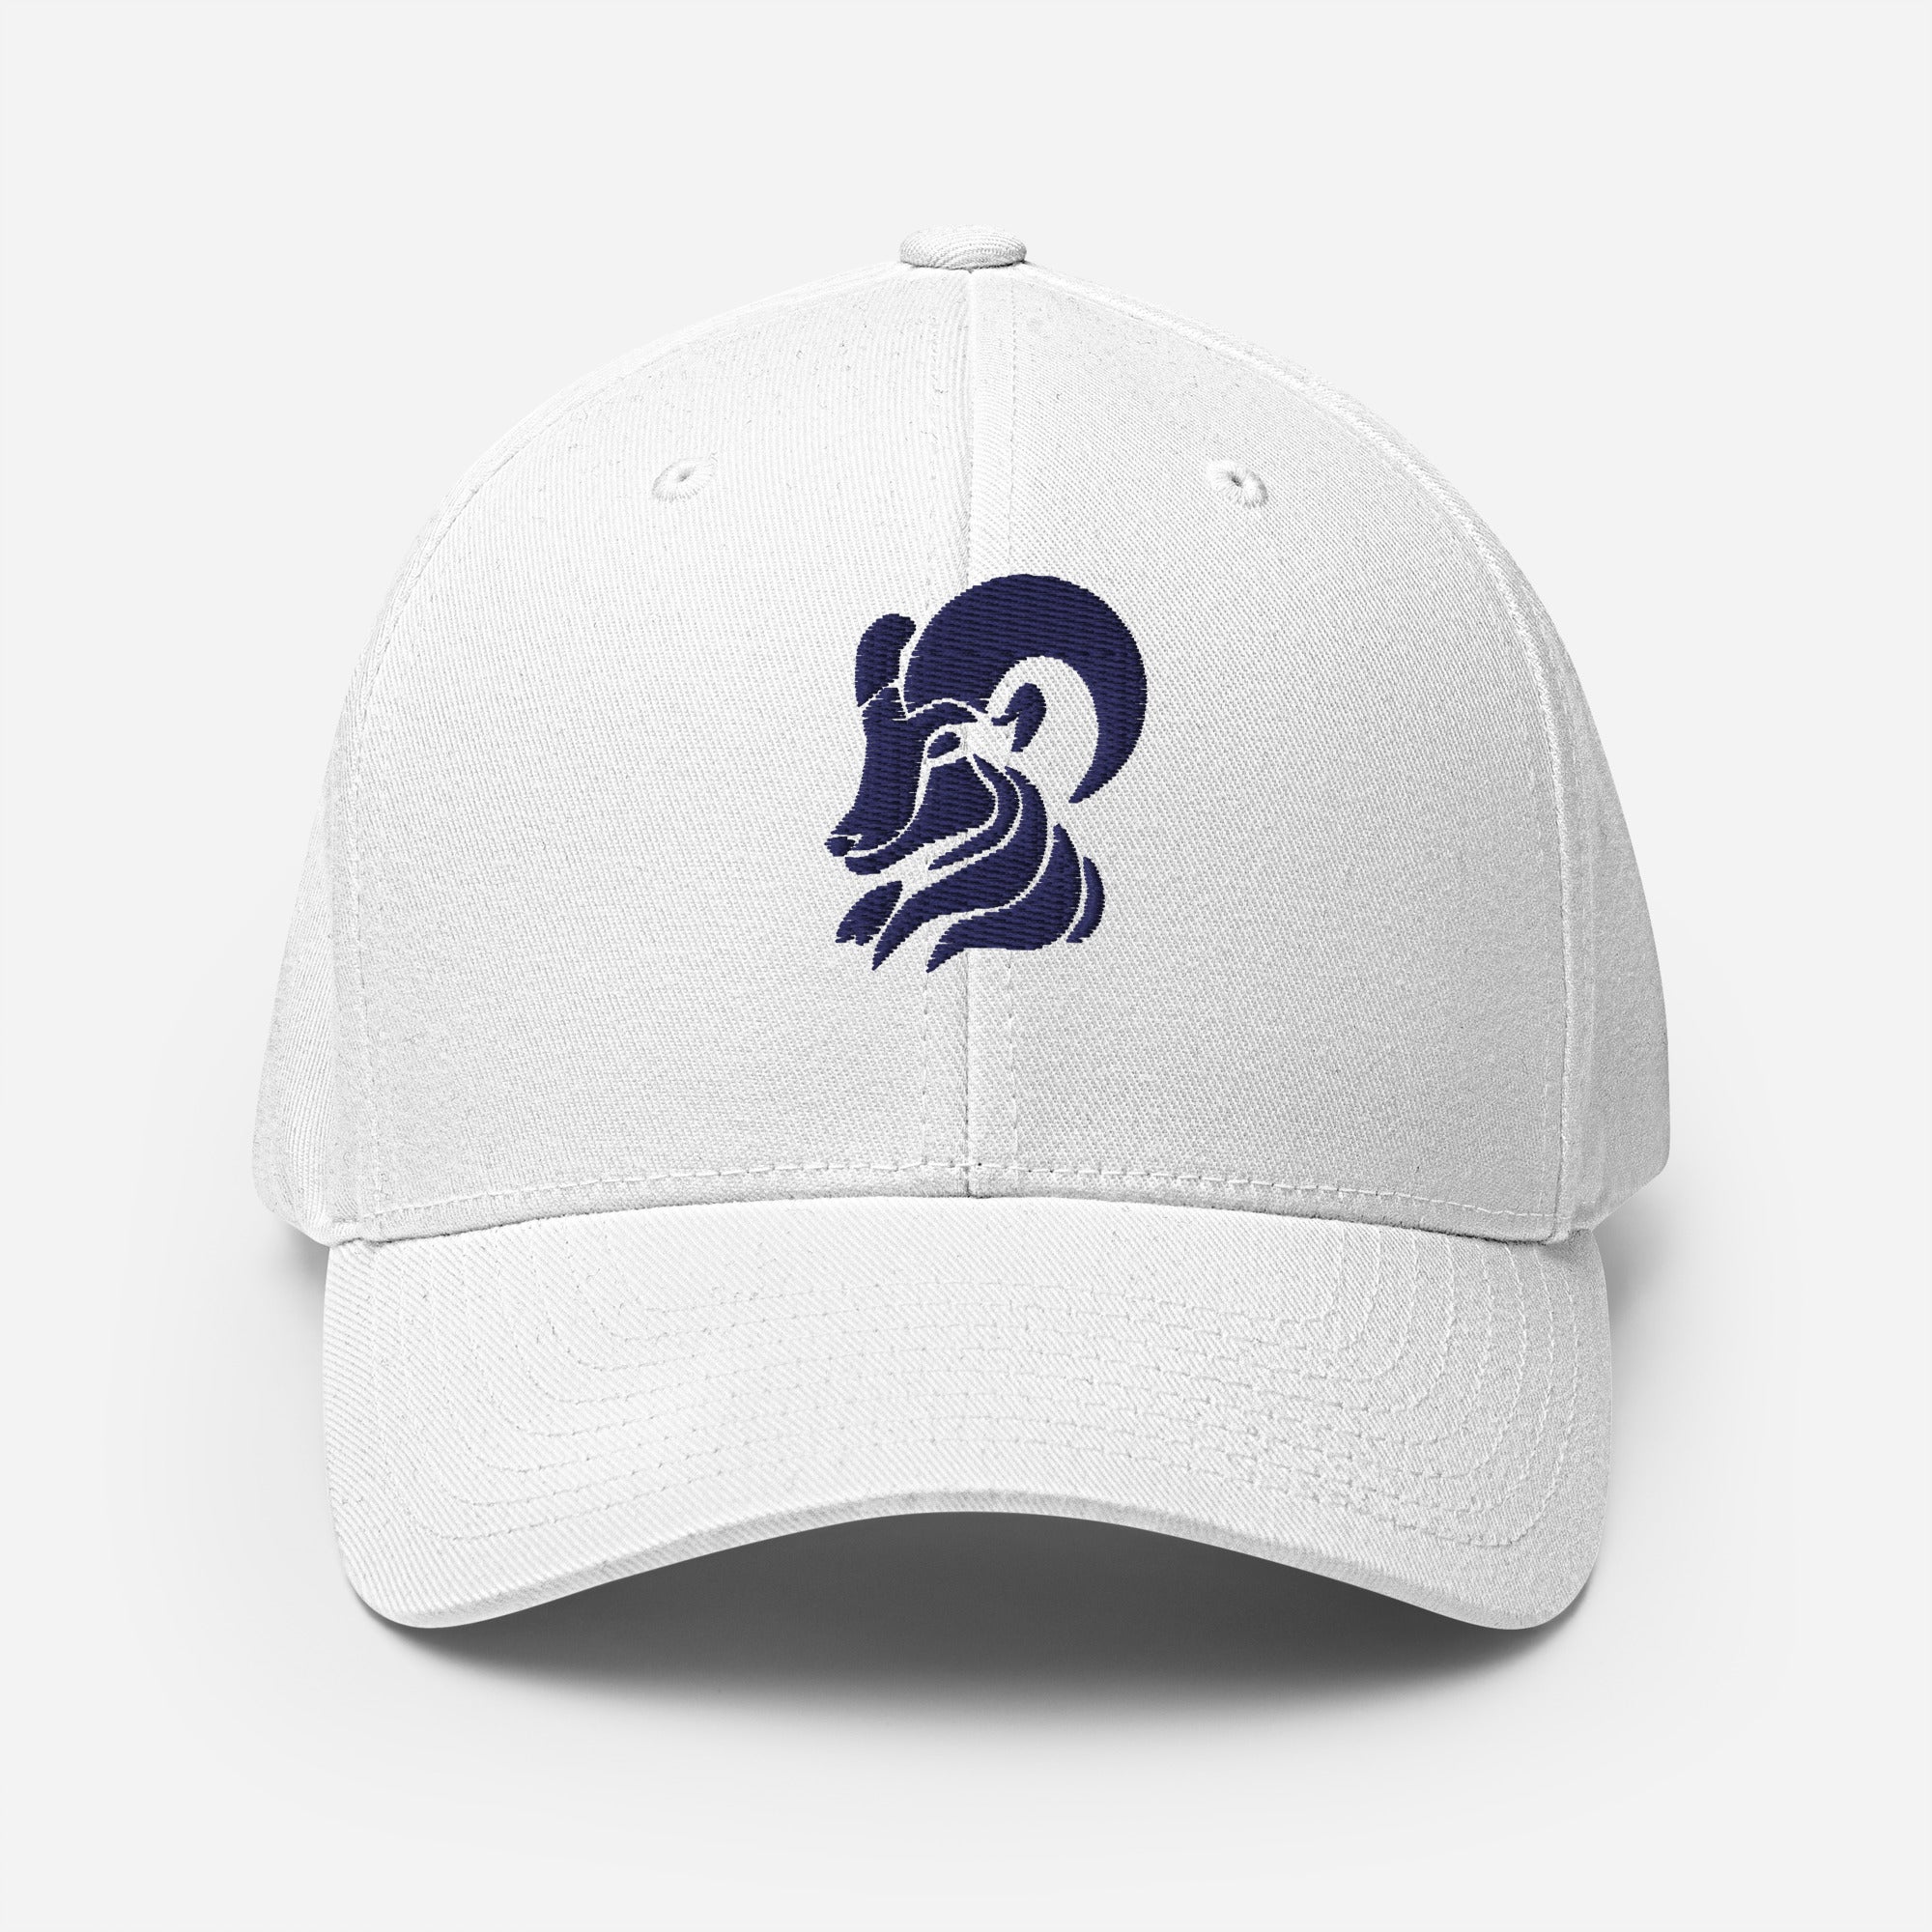 "Phillygoat Goat" Flexfit Hat